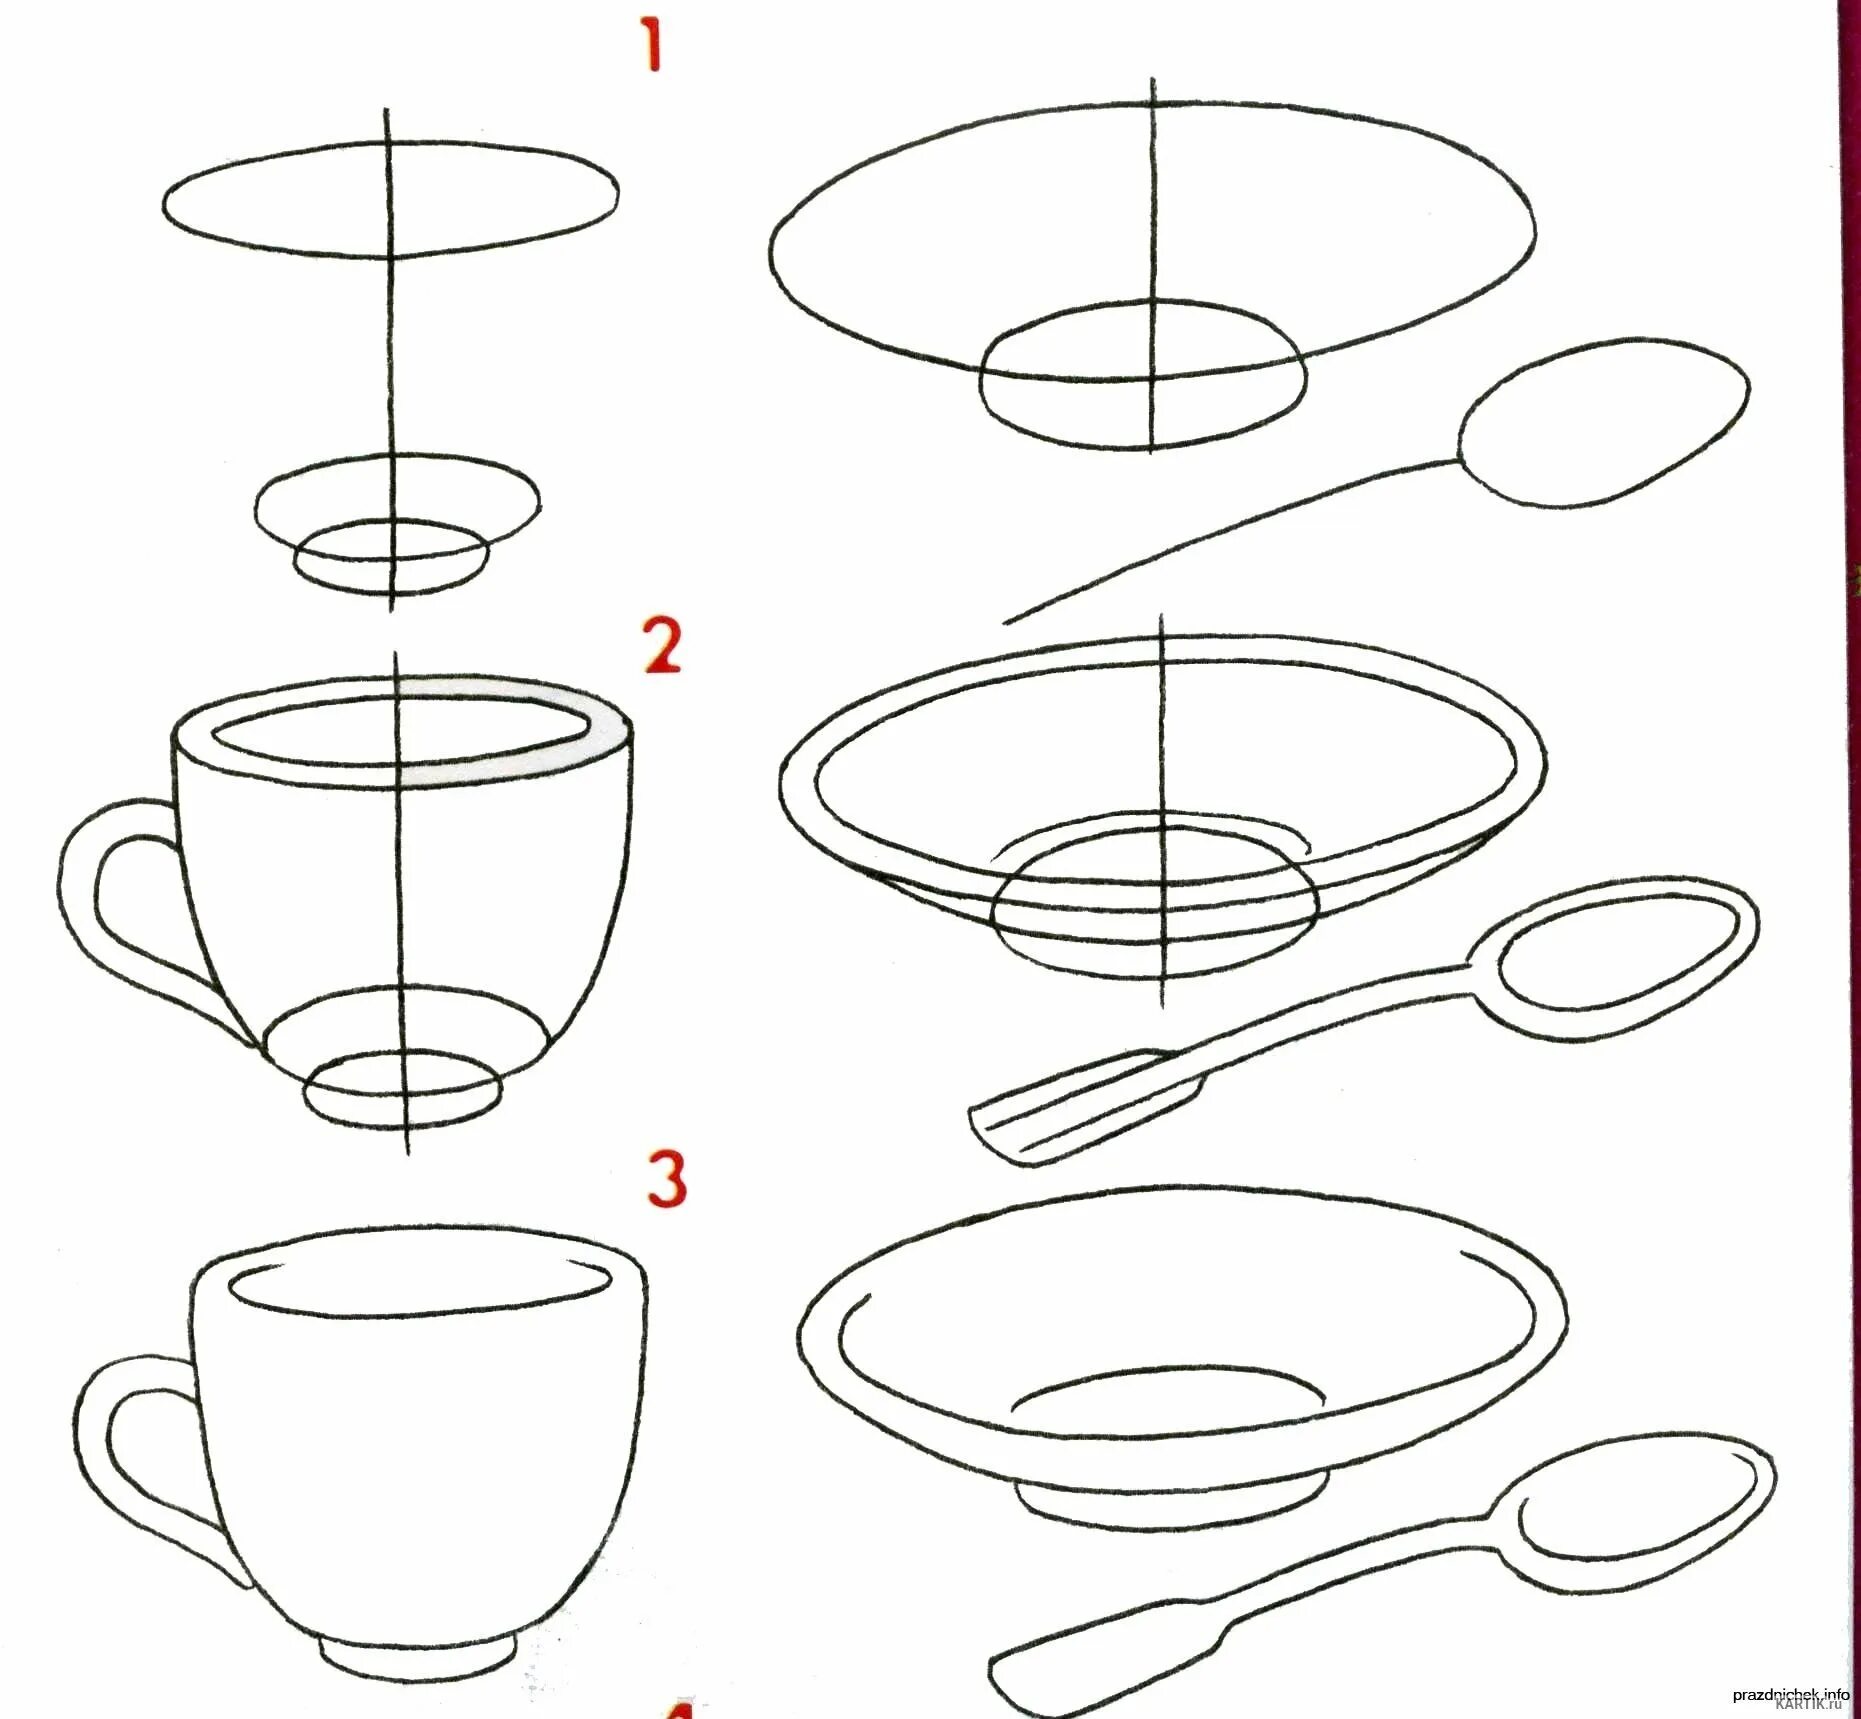 Алгоритм рисования посуды для детей. Посуда по рисованию для дошкольников. Схема рисования посуды для детей. Пошаговое рисование для дошкольников.